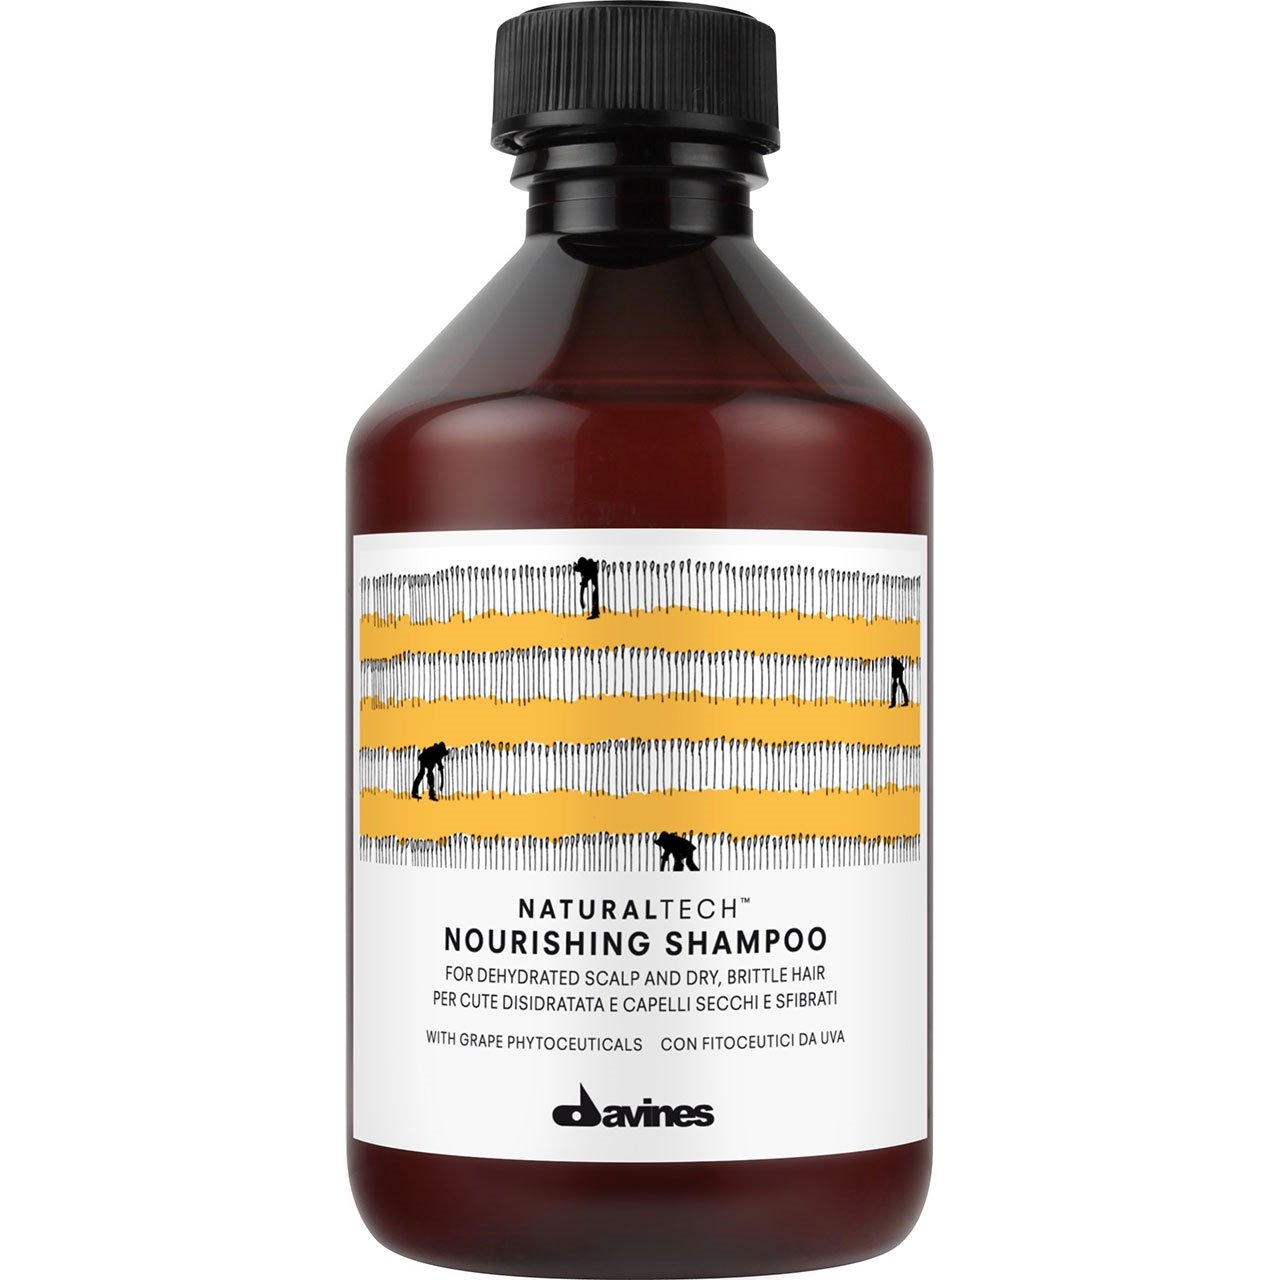 NaturalTech Nourishing Shampoo